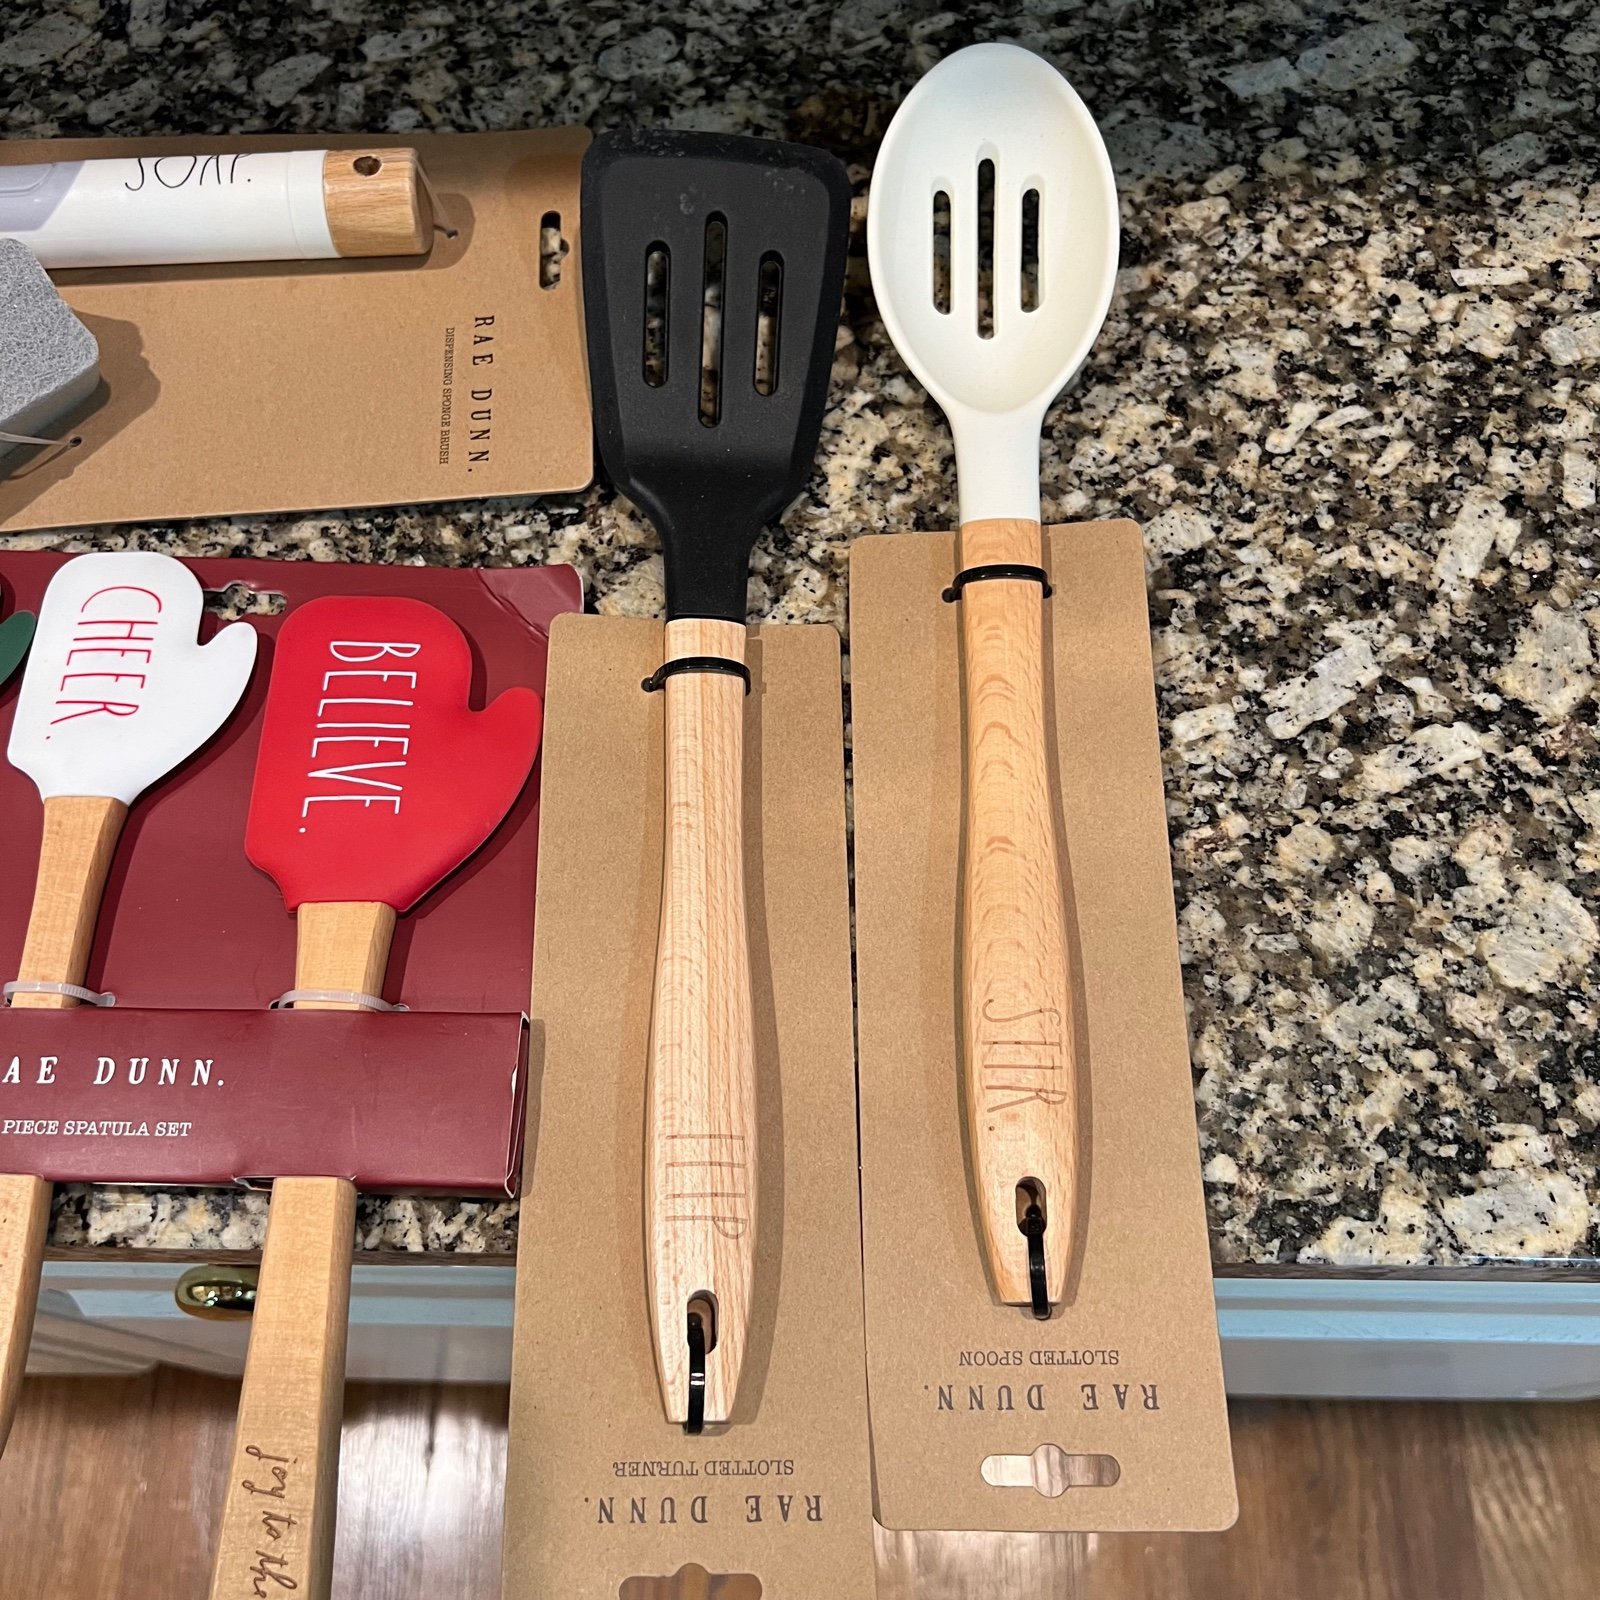 Rae Dunn kitchen utensils CZUCRl2ym